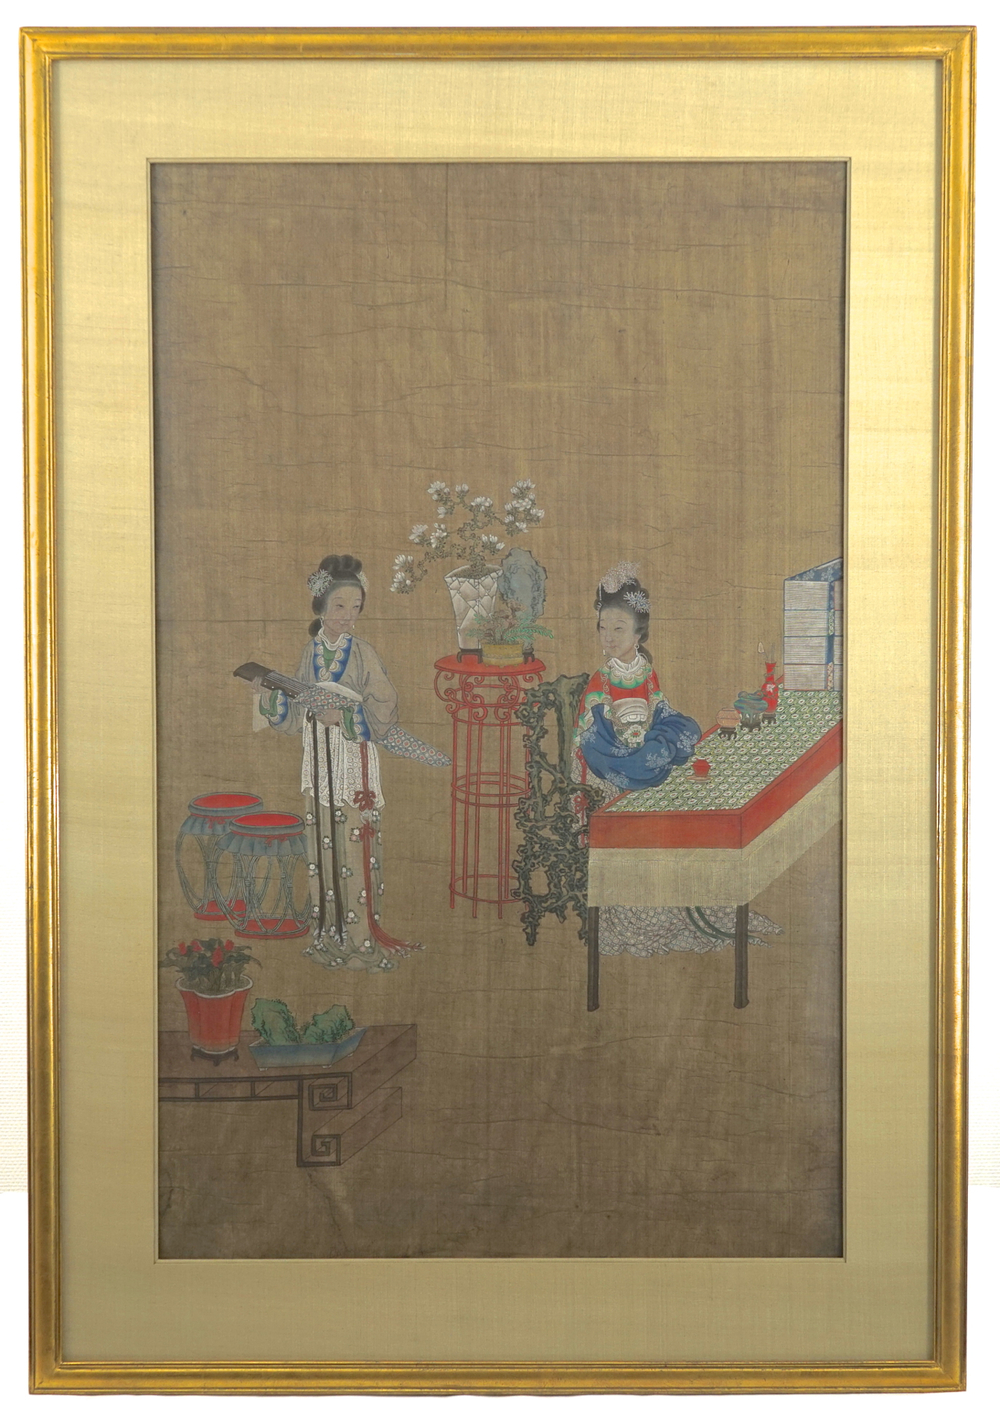 Grande peinture chinoise sur soie avec deux dames, dont une avec une Qin, 18e-19e